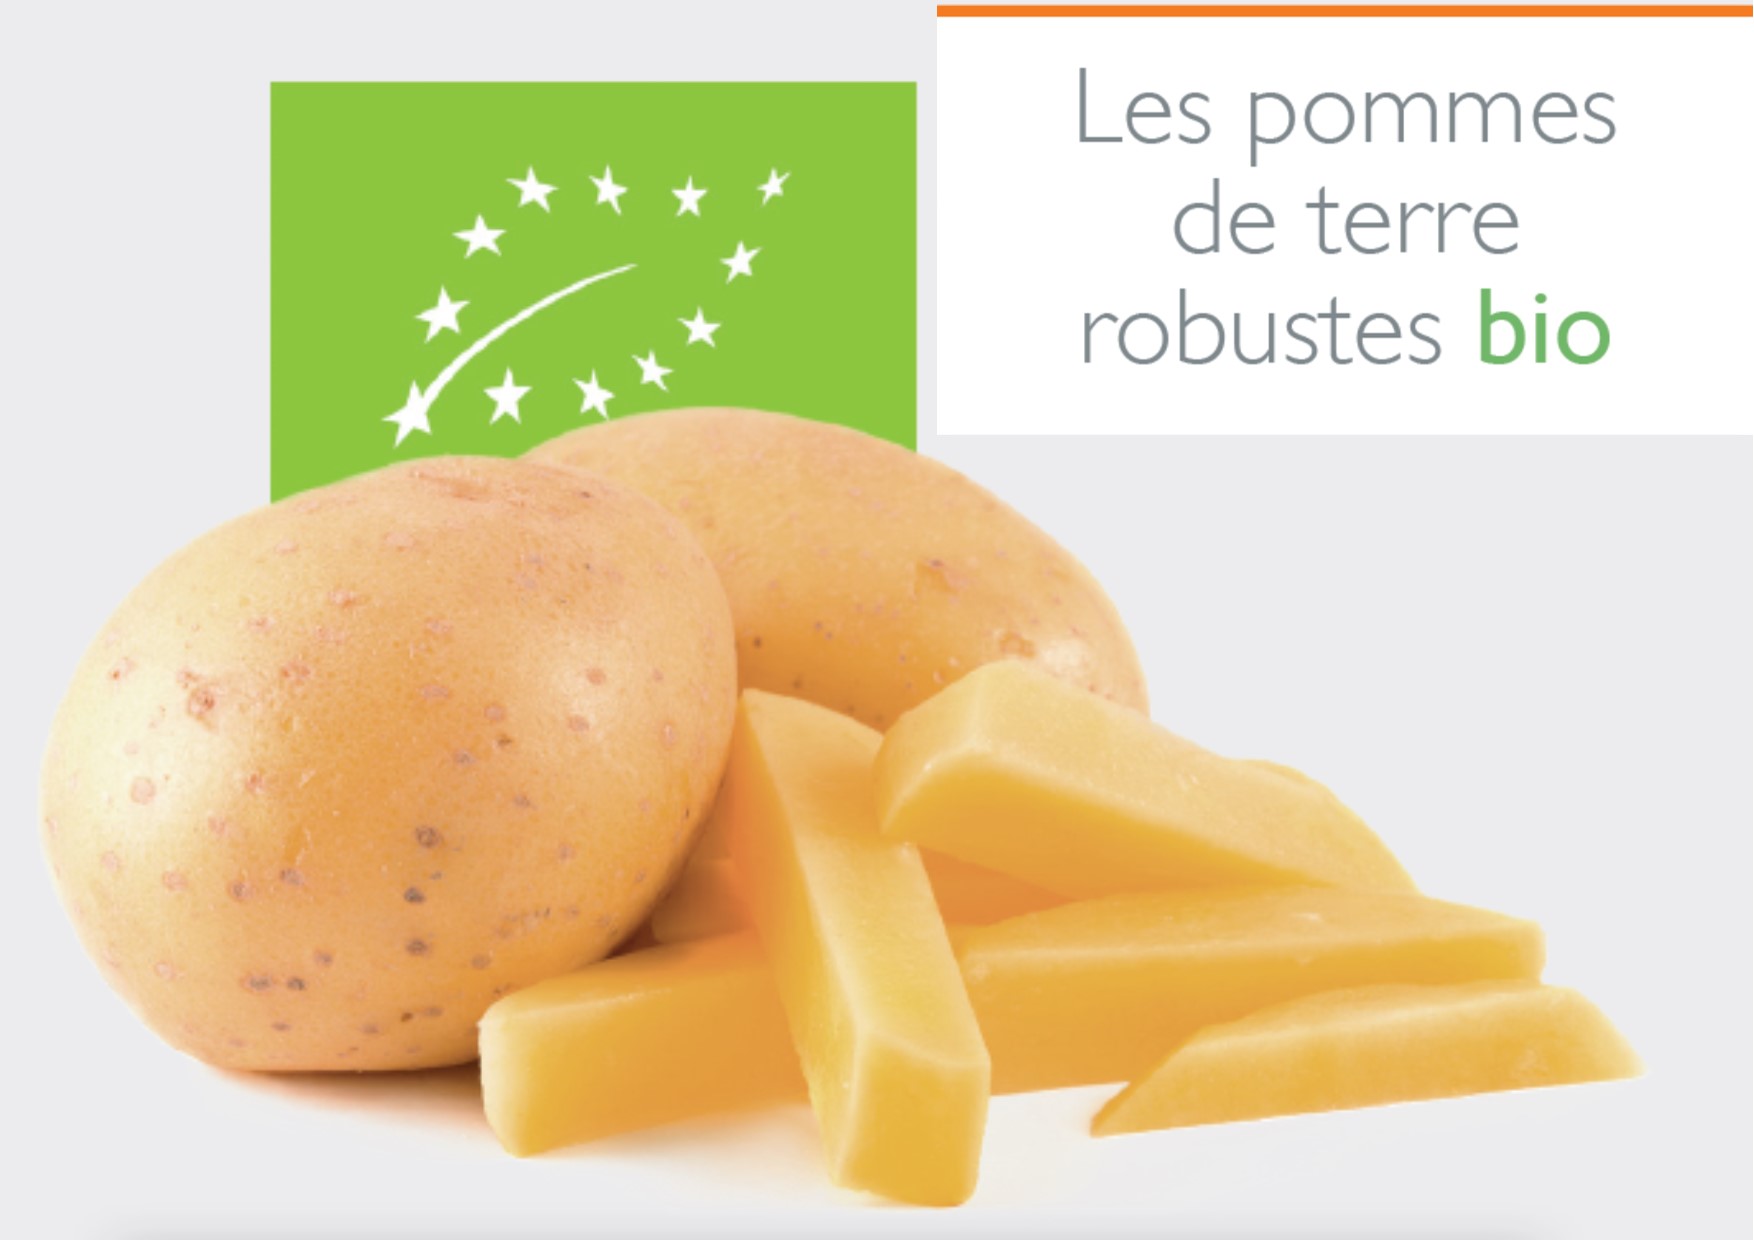 Le 25 août : Cinquième édition de la visite de l’essai variétés robustes de pomme de terre en Wallonie à Gembloux